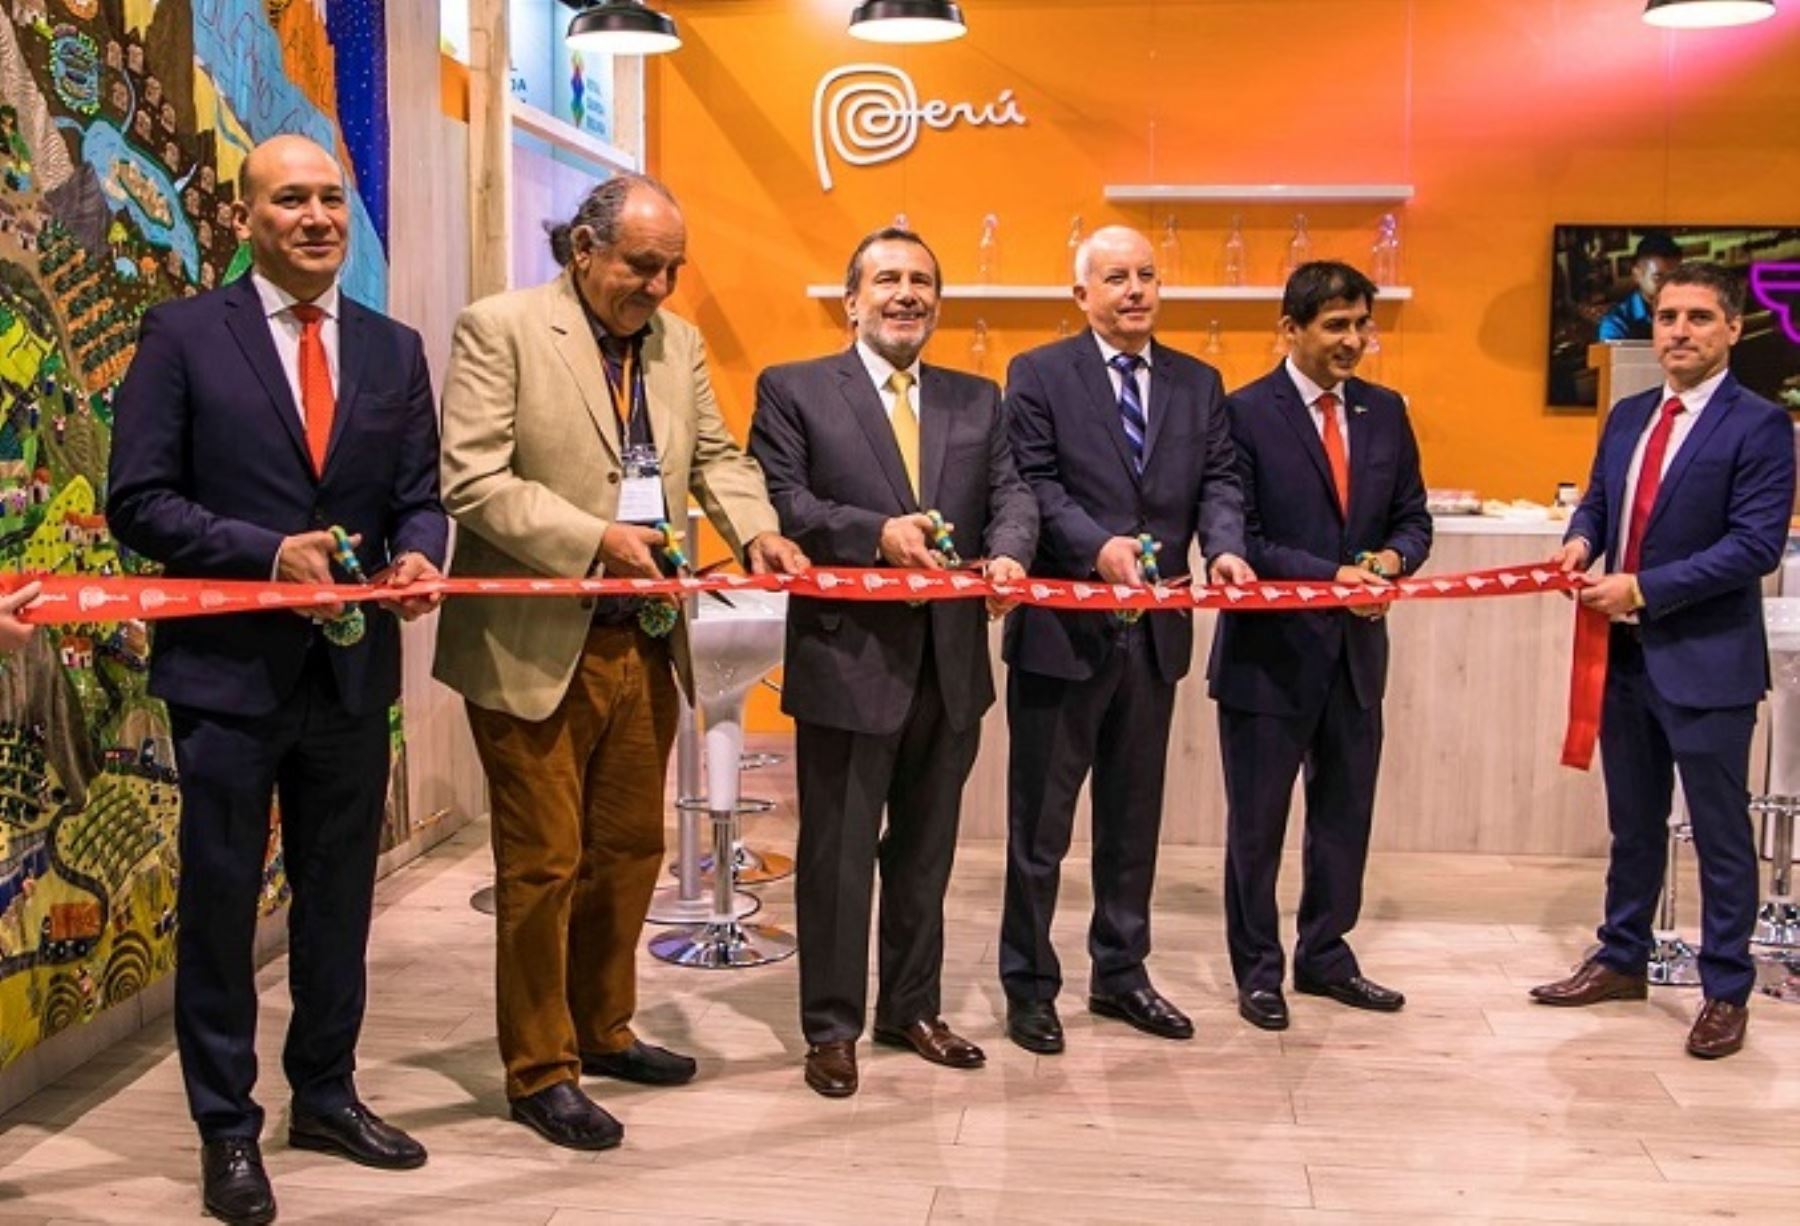 Inauguración del stand Perú en Biofach 2019. Foto: Cortesía.